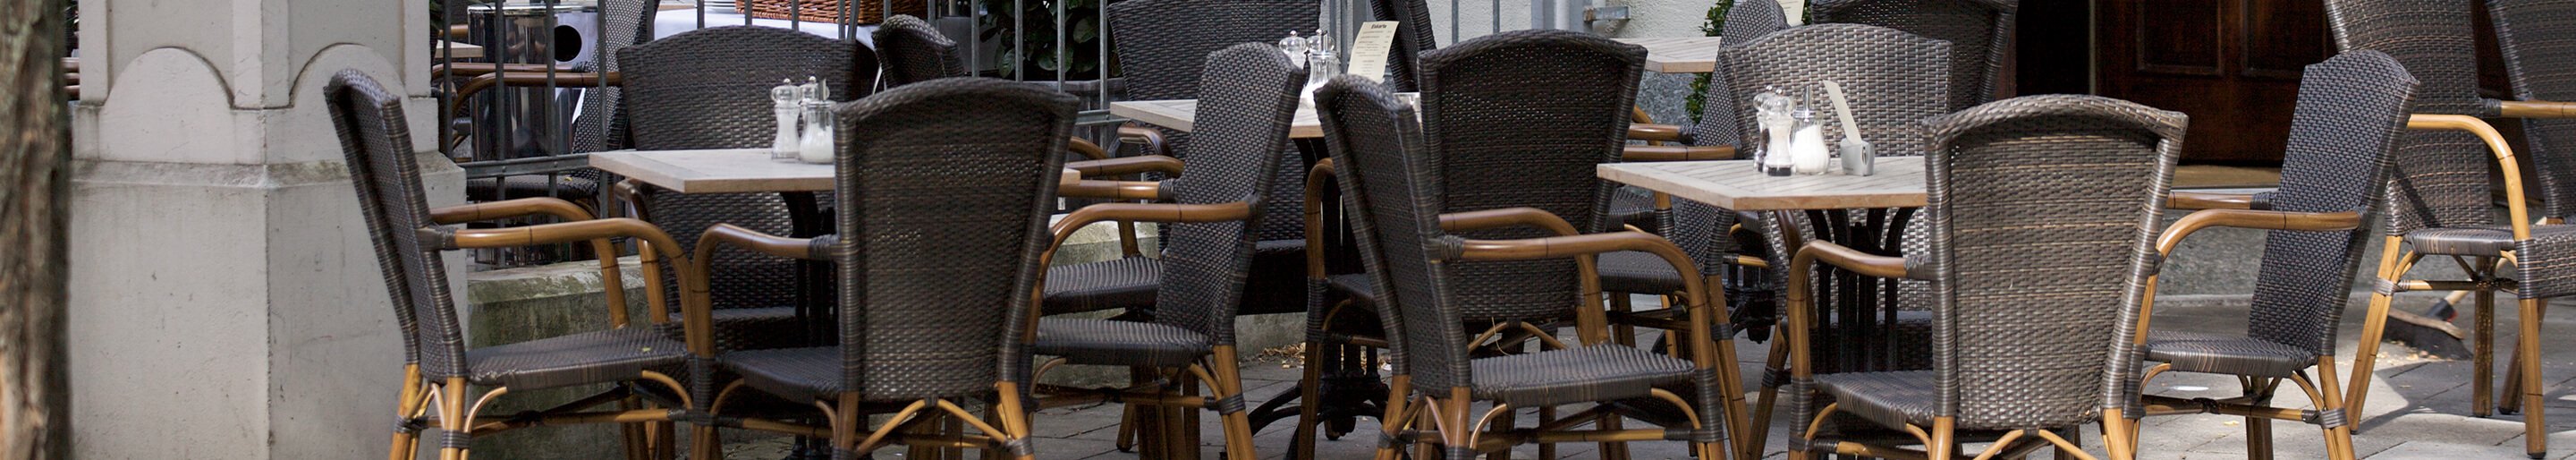 Outdoor Geflechstühle für Gastronomie und Hotellerie